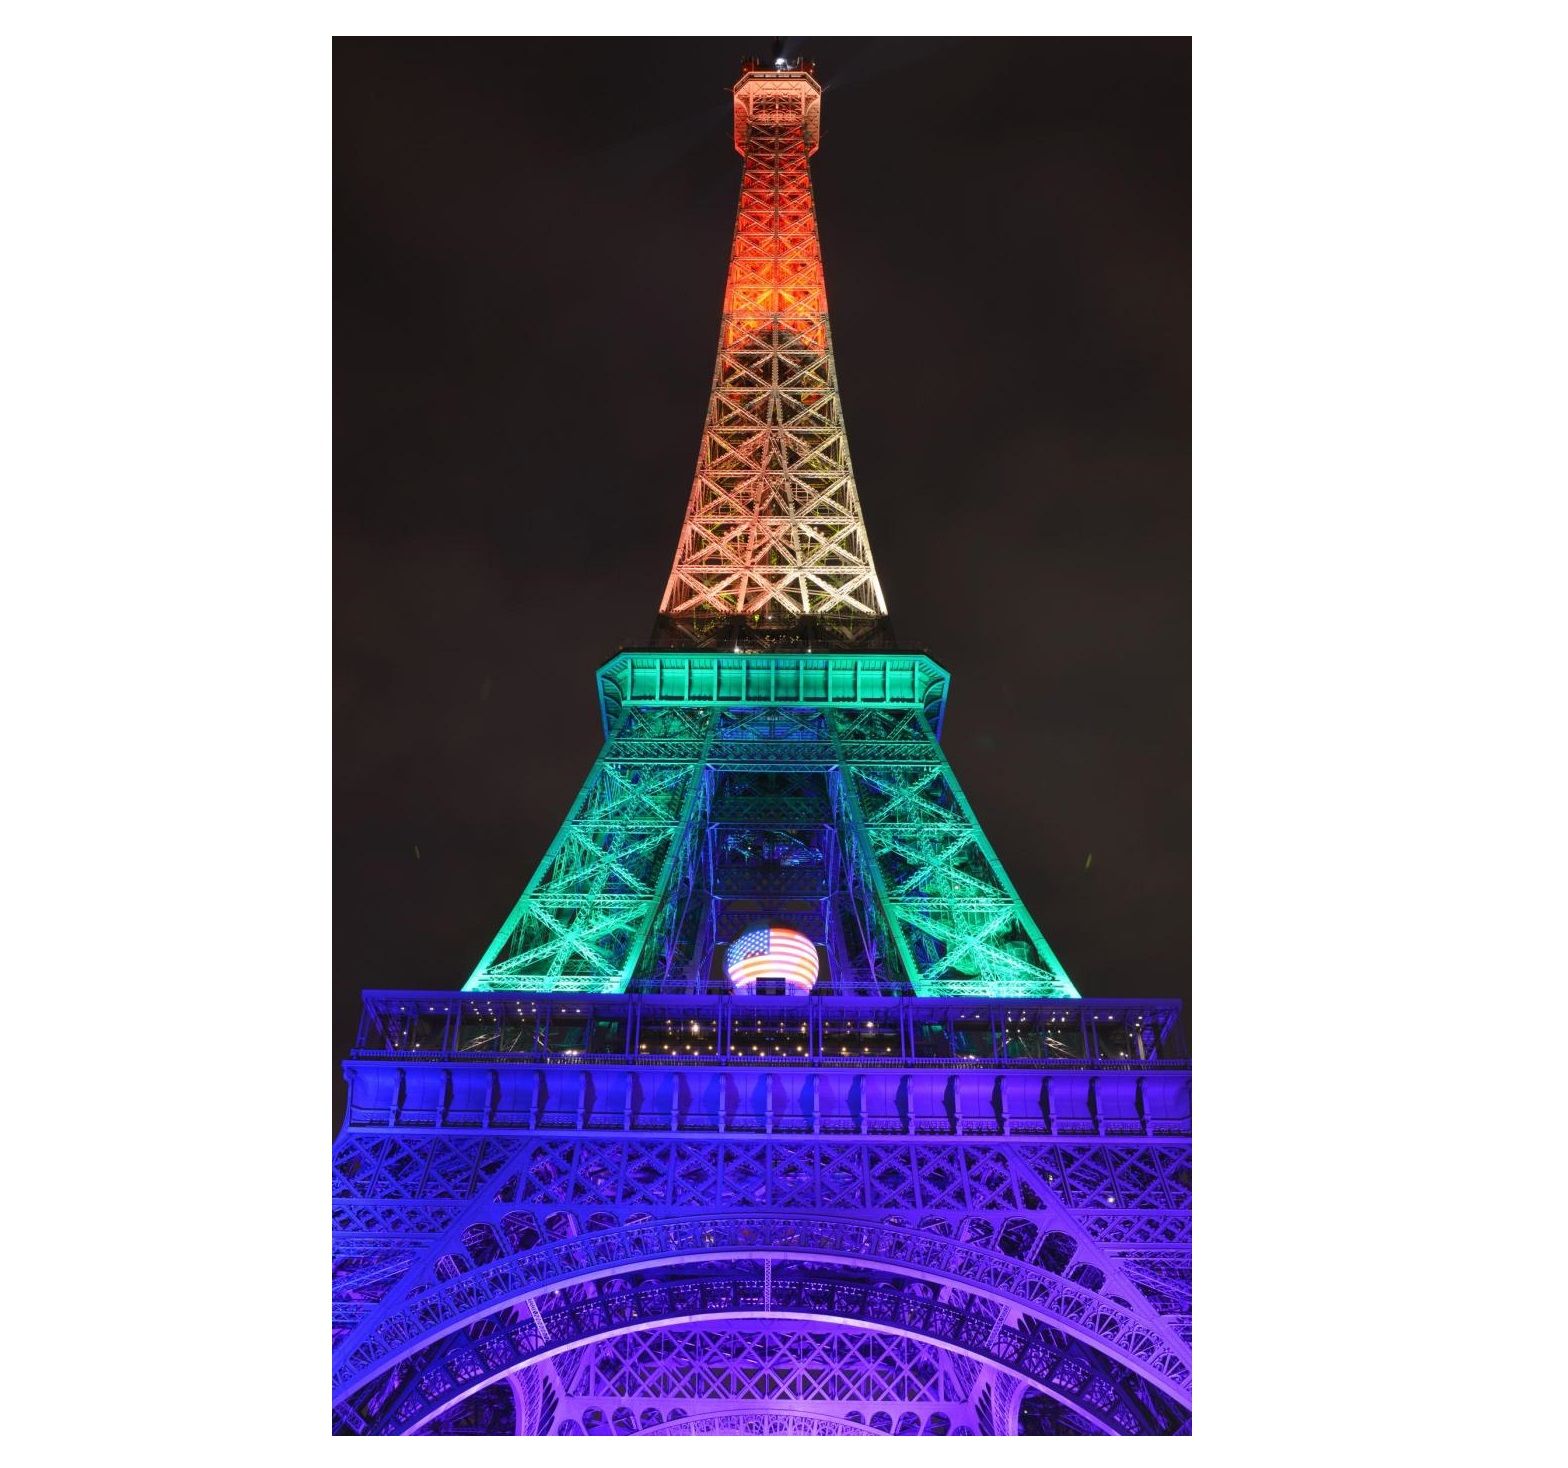 La Tour Eiffel si illumina con i colori dell'arcobaleno in memoria strage Orlando